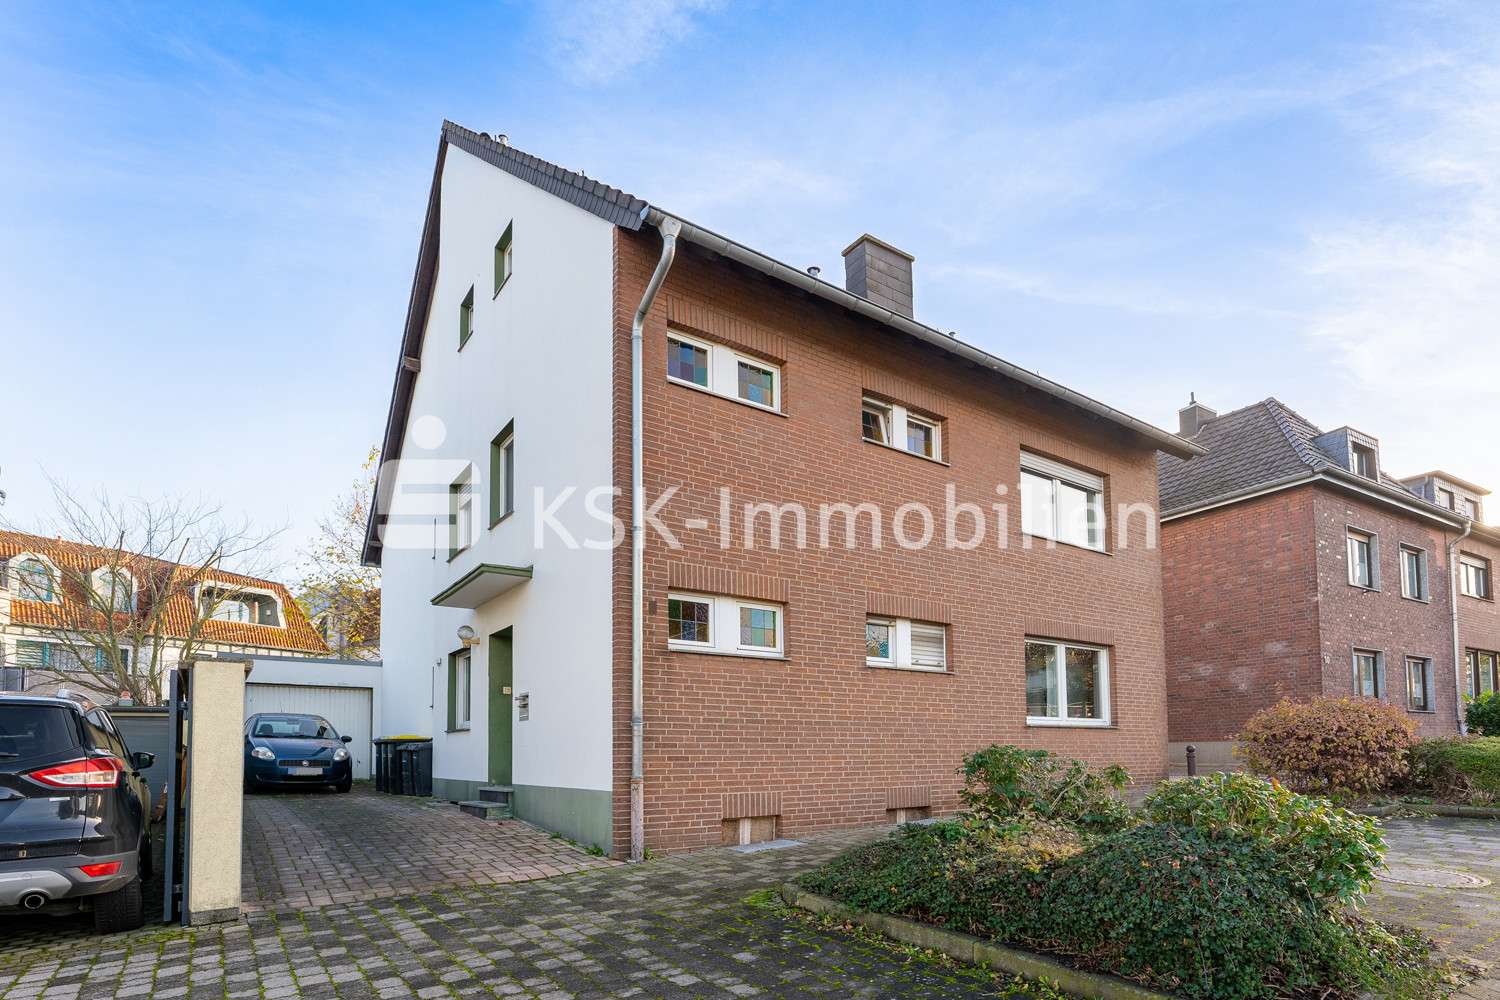 110123 Vorderansicht - Mehrfamilienhaus in 52379 Langerwehe mit 236m² als Kapitalanlage günstig kaufen